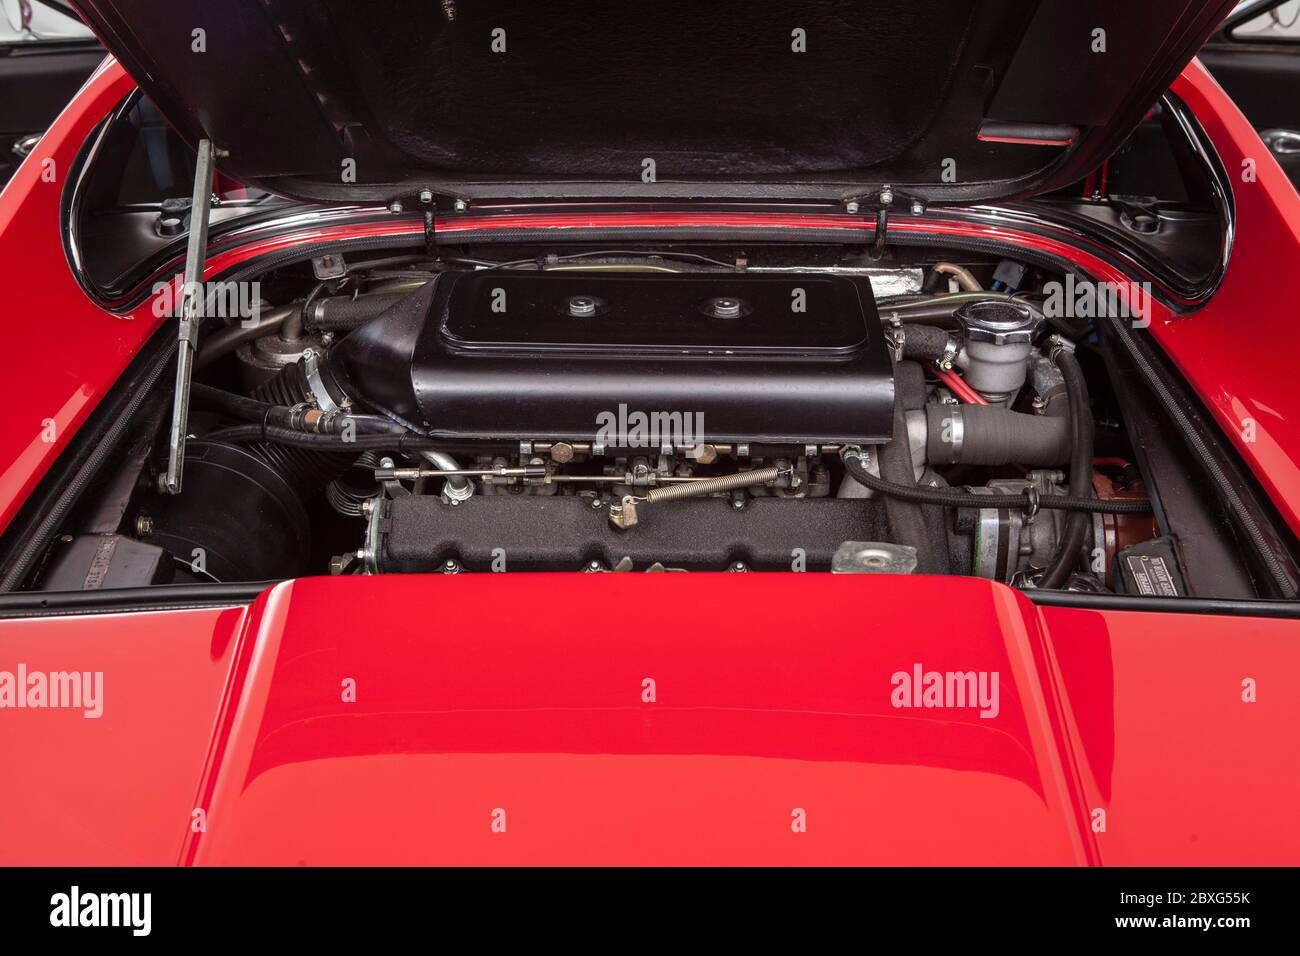 Ferrari Dino 246 GTS engine Stock Photo